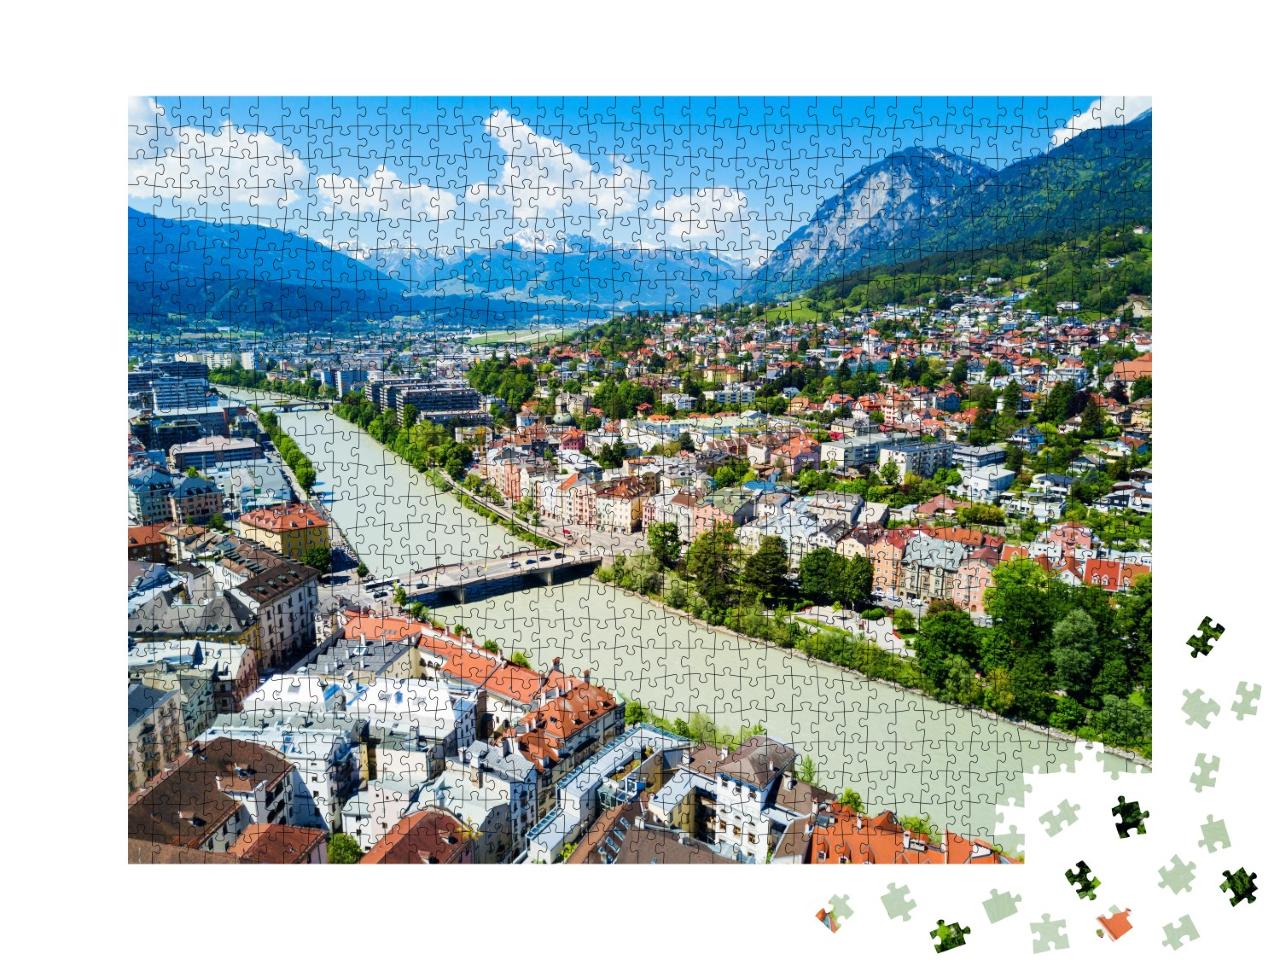 Puzzle de 1000 pièces « La rivière Inn et le centre-ville d'Innsbruck vus d'en haut »